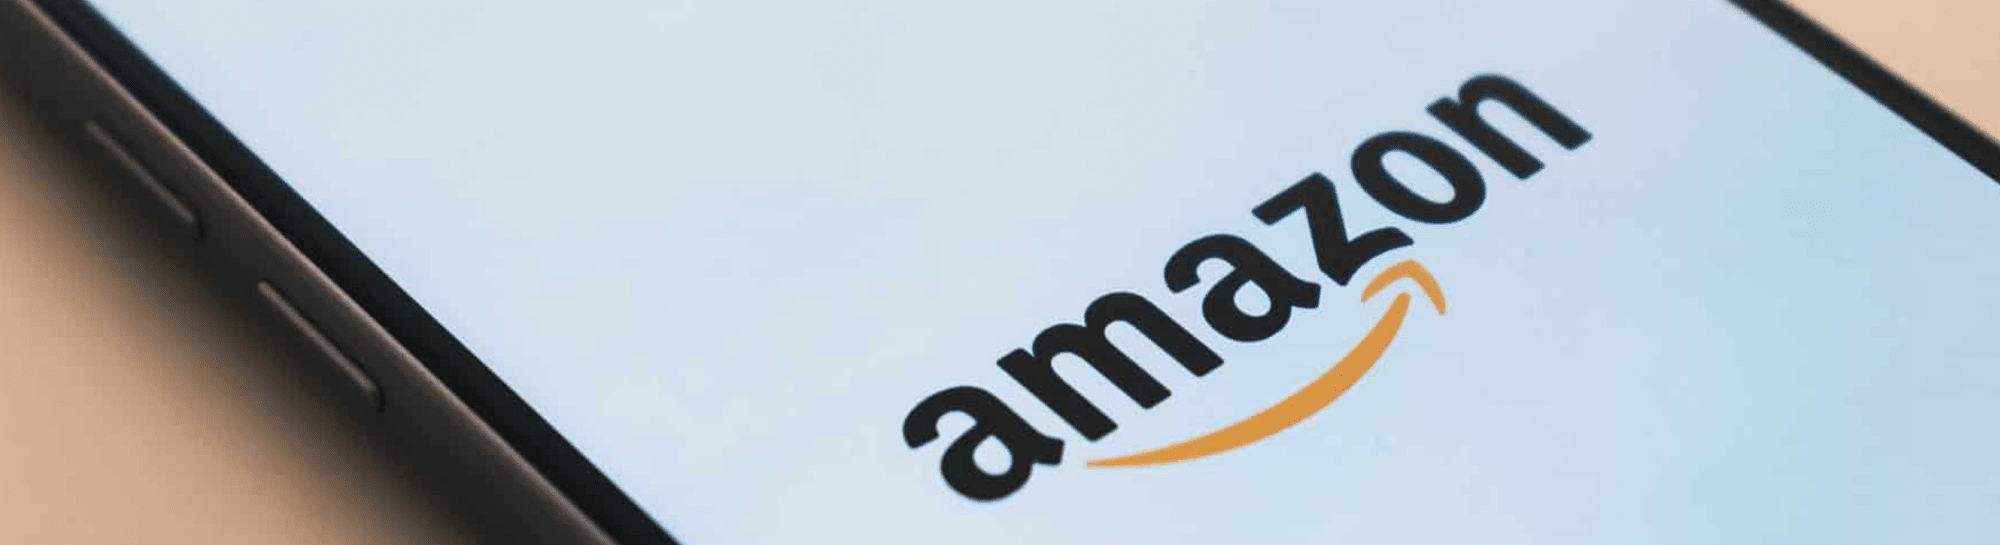 Amazon FBA: Der Fulfillment-Service und seine Alternativen im Überblick!